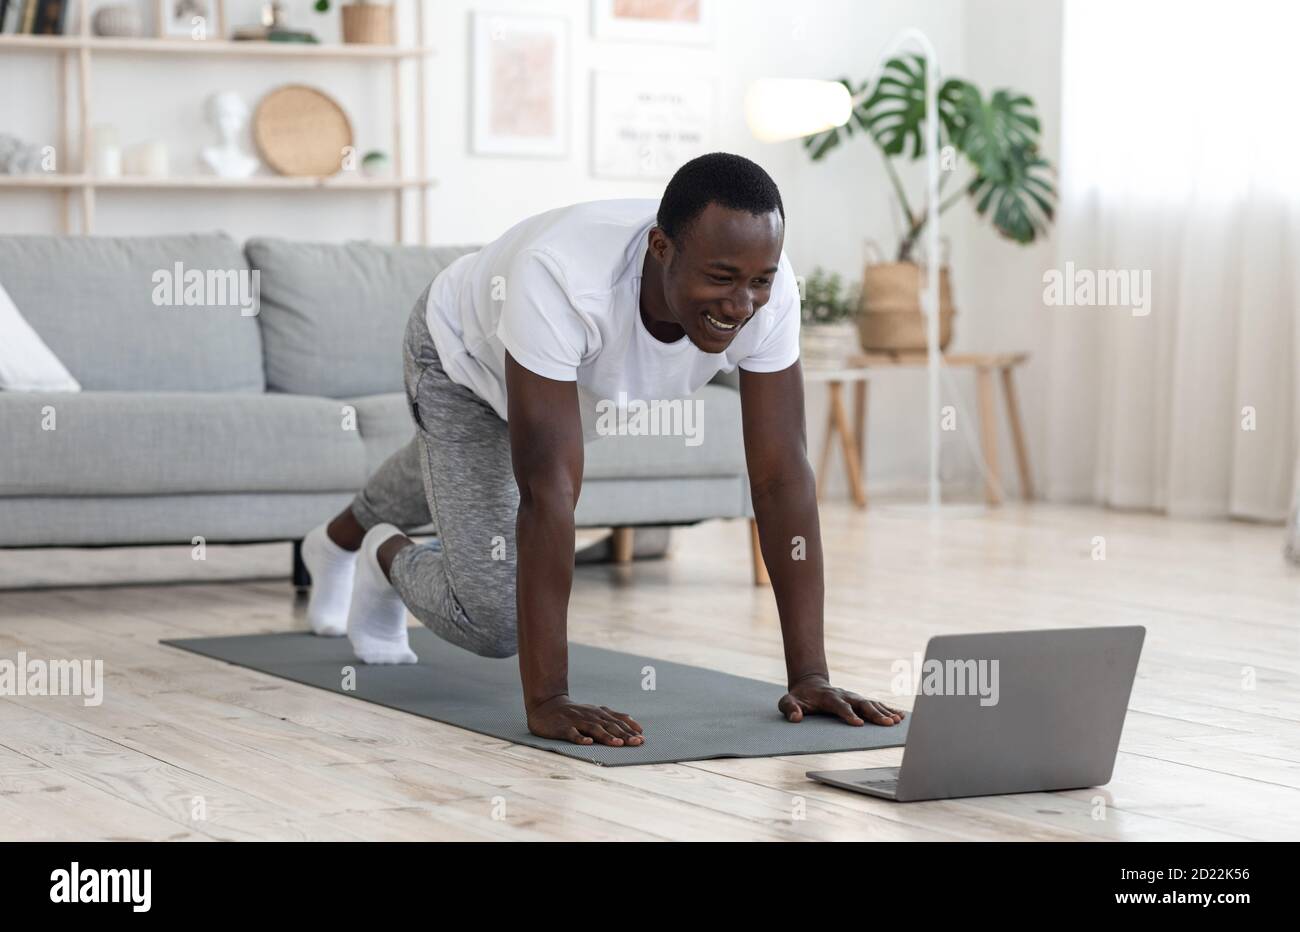 Gioioso ragazzo nero che si esercita a casa, guardando lo schermo del computer portatile Foto Stock